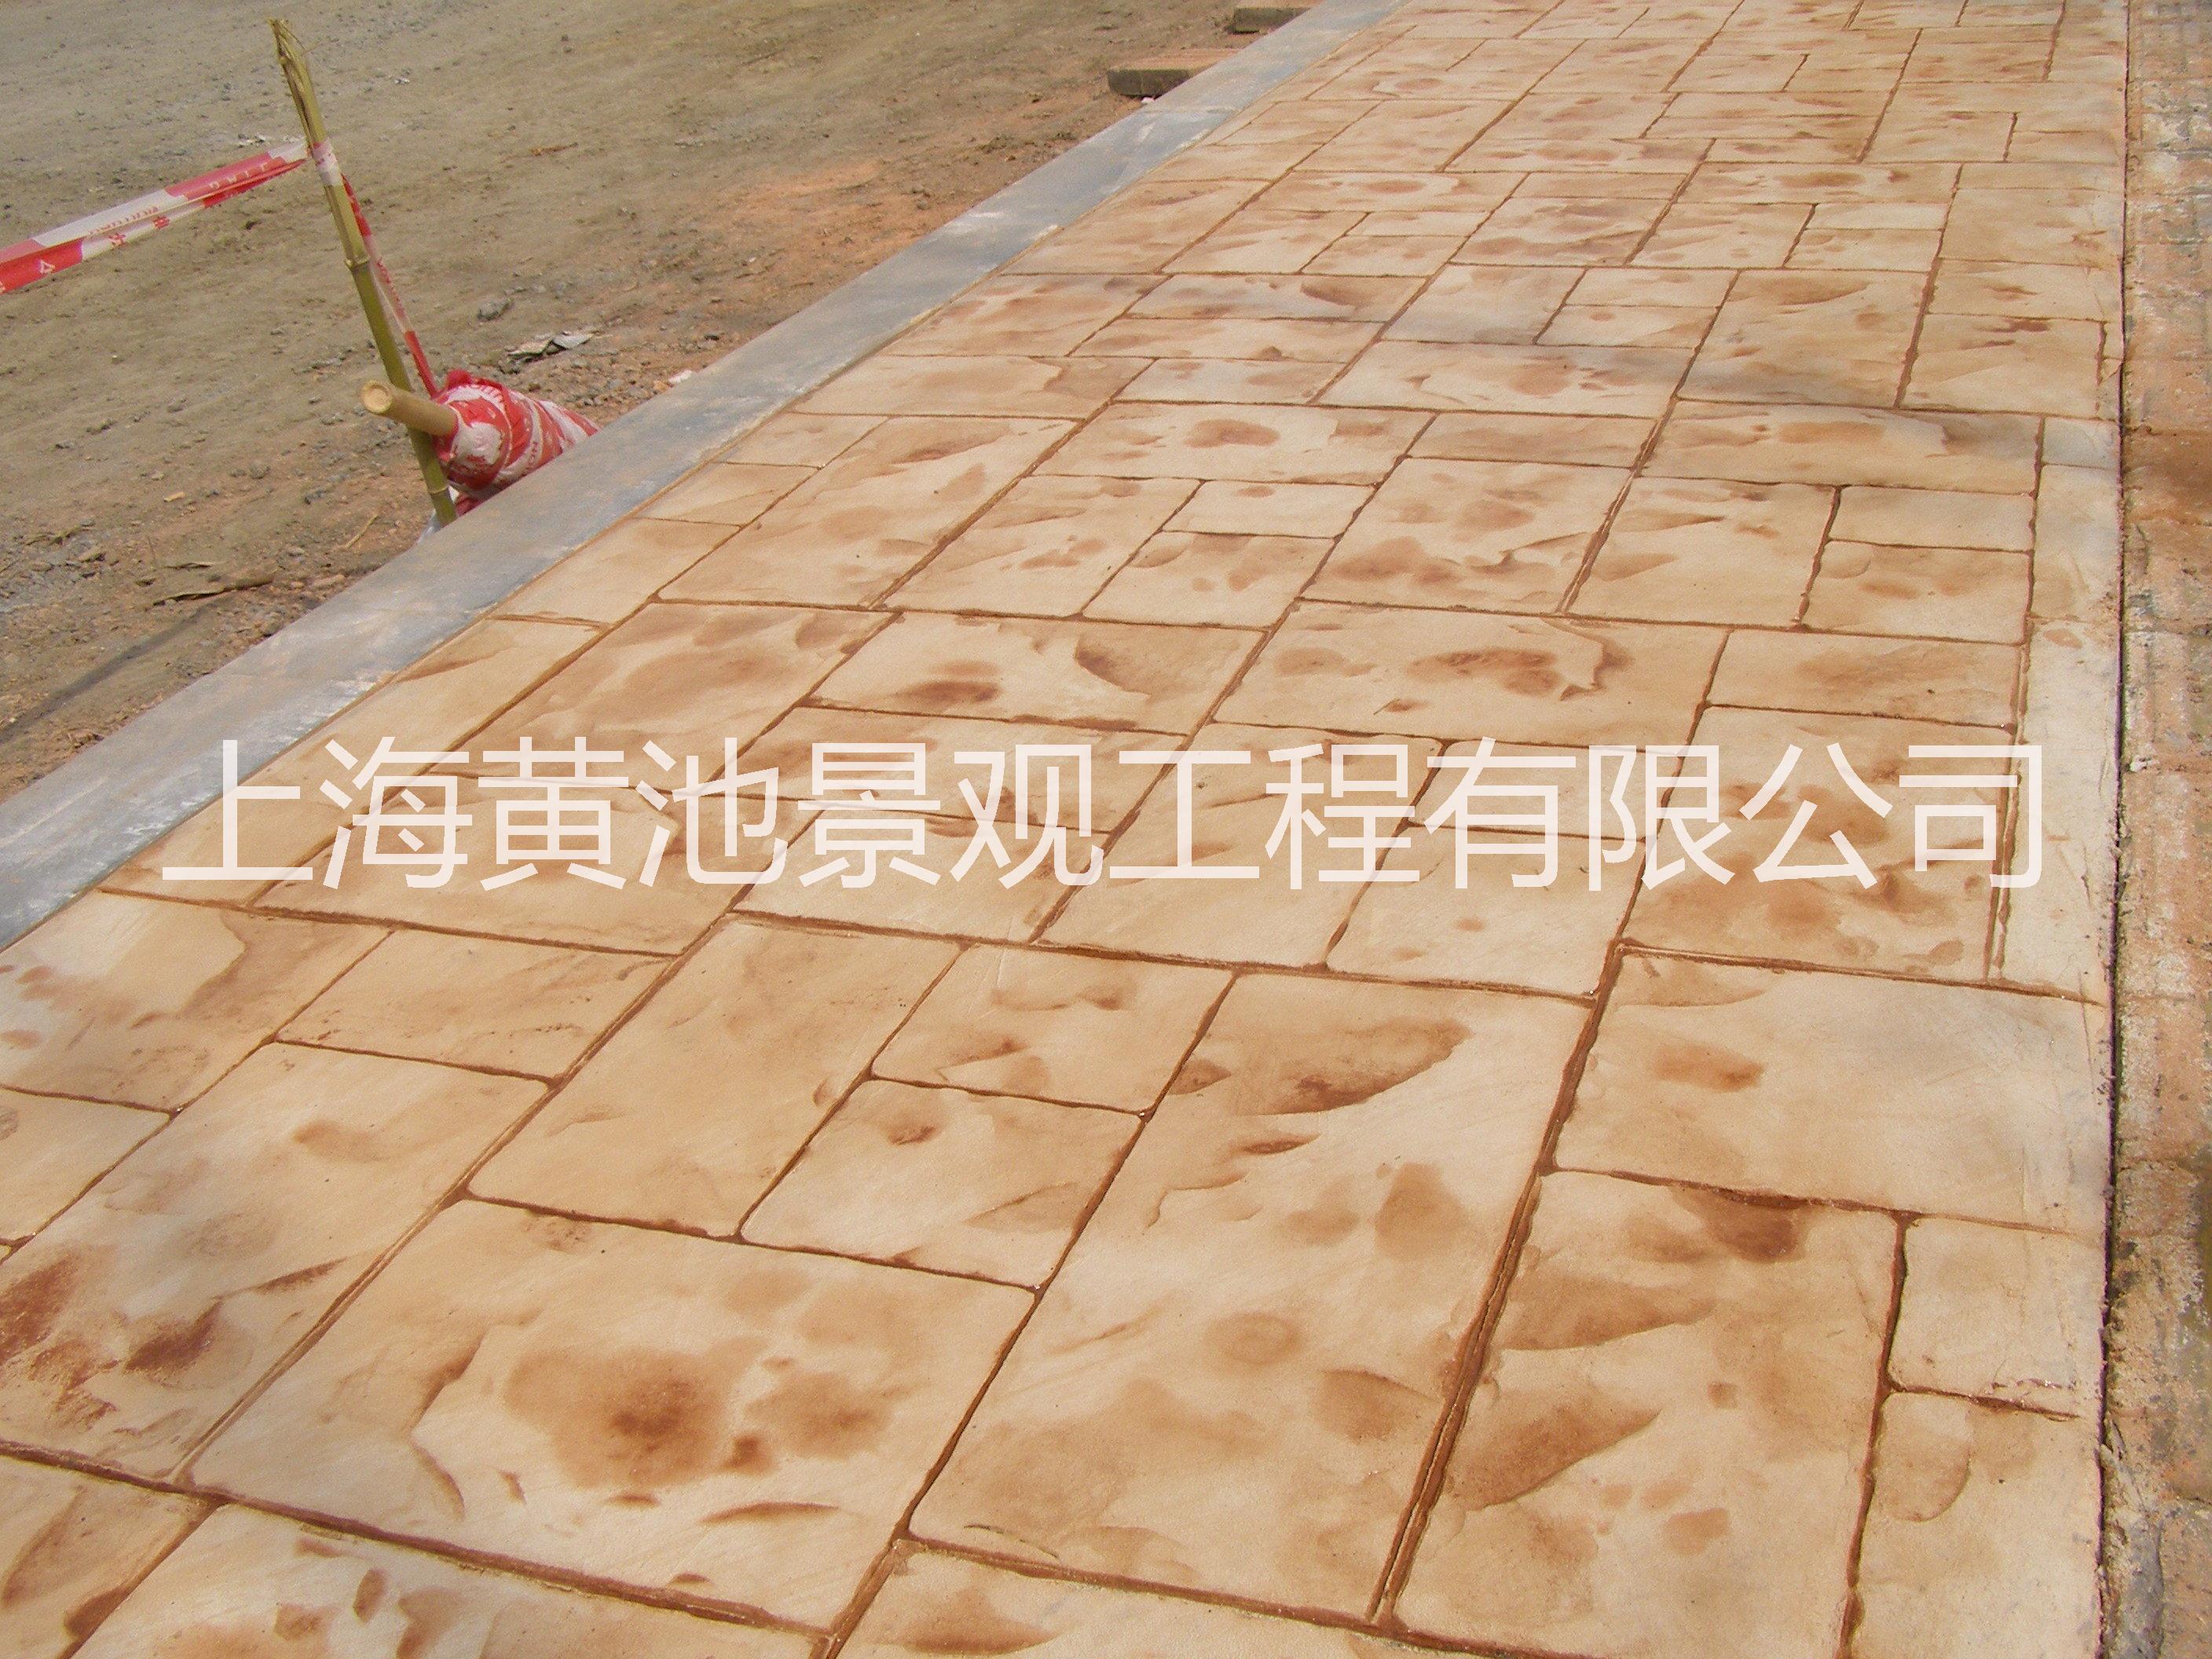 压模地坪材料供应施工承包专业合作伙伴-上海黄池彩坪图片